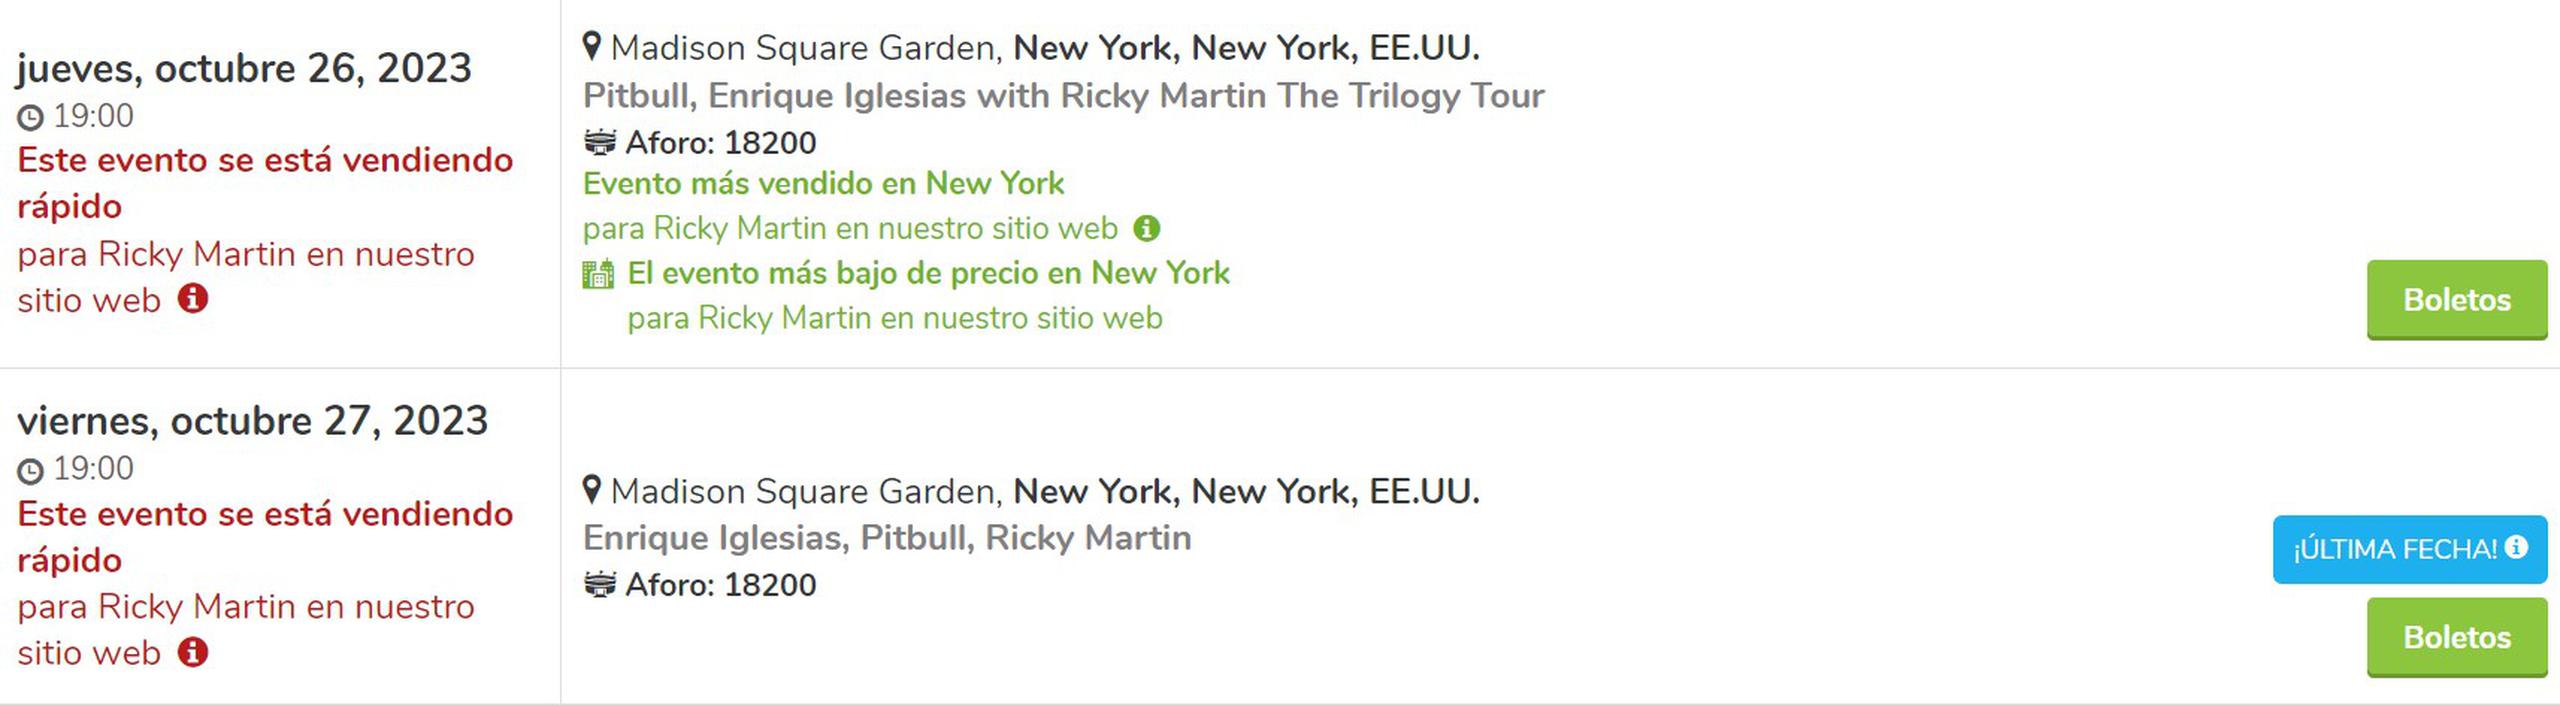 Captura que establece que para las fechas del 26 y 27 de octubre Ricky Martin estará en un concierto en Nueva York junto a Pitbull y Enrique Iglesias.